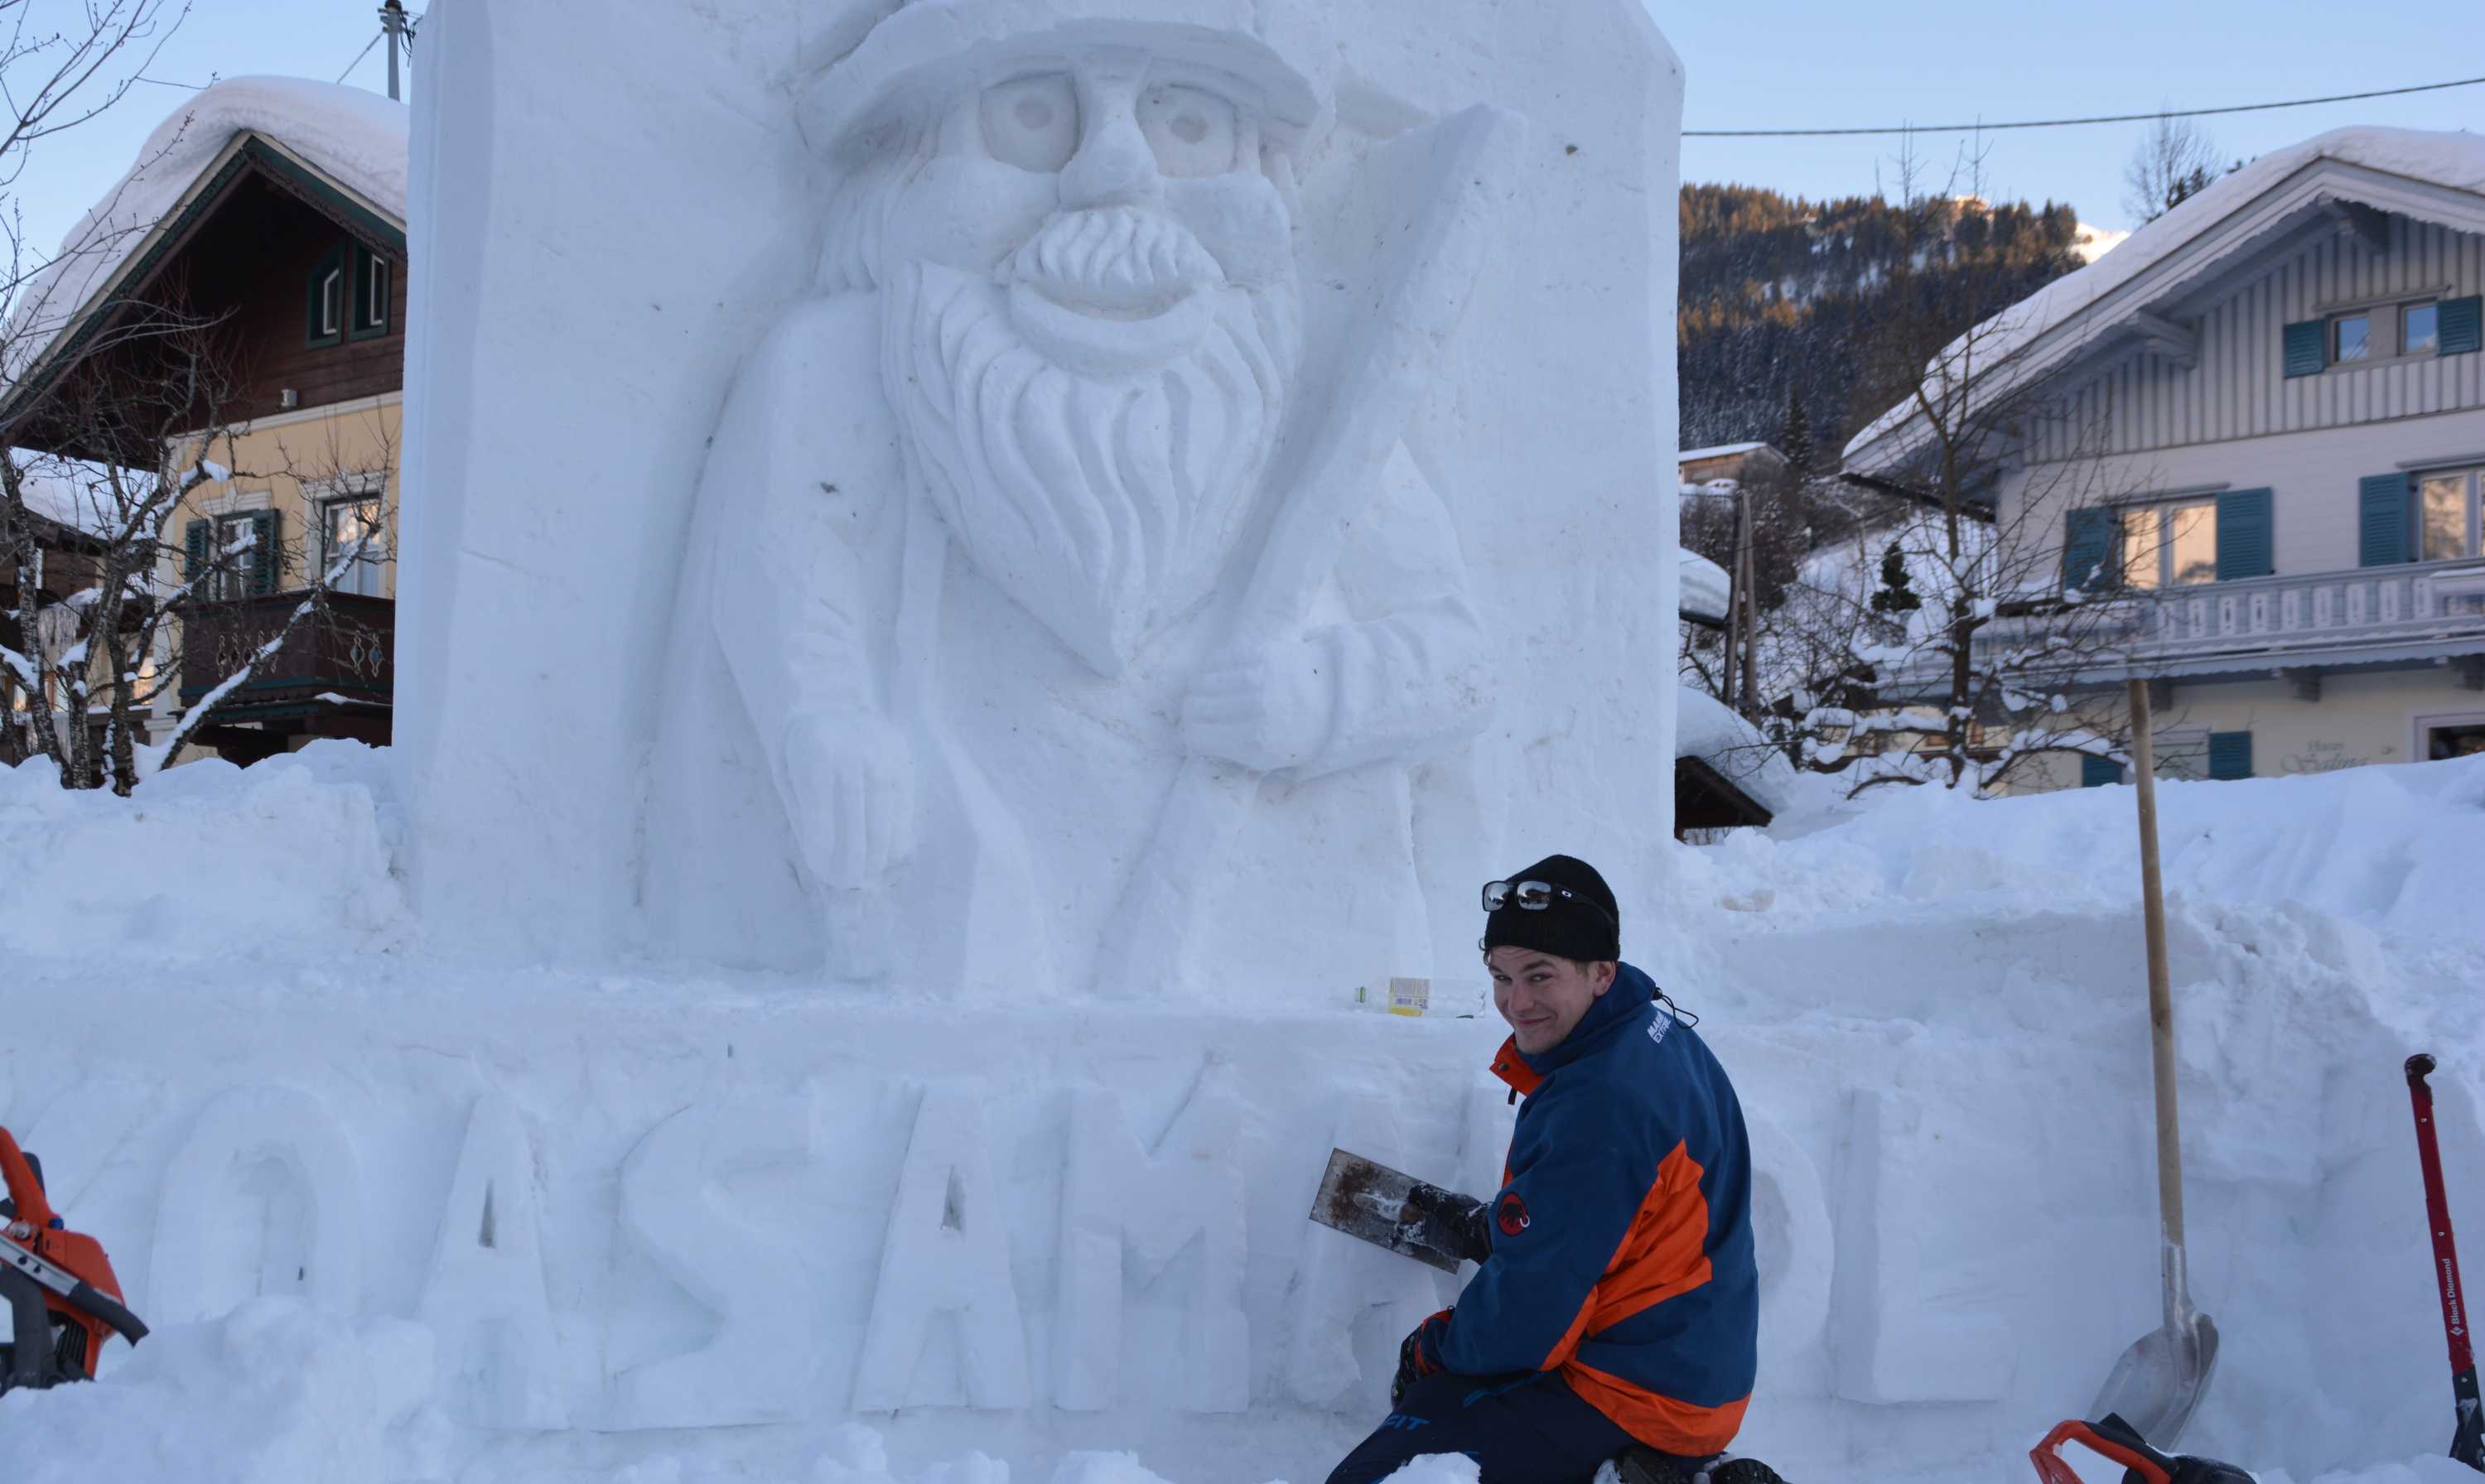 Schneeskulptur Koasamandl Schrift_2019-01-31_web